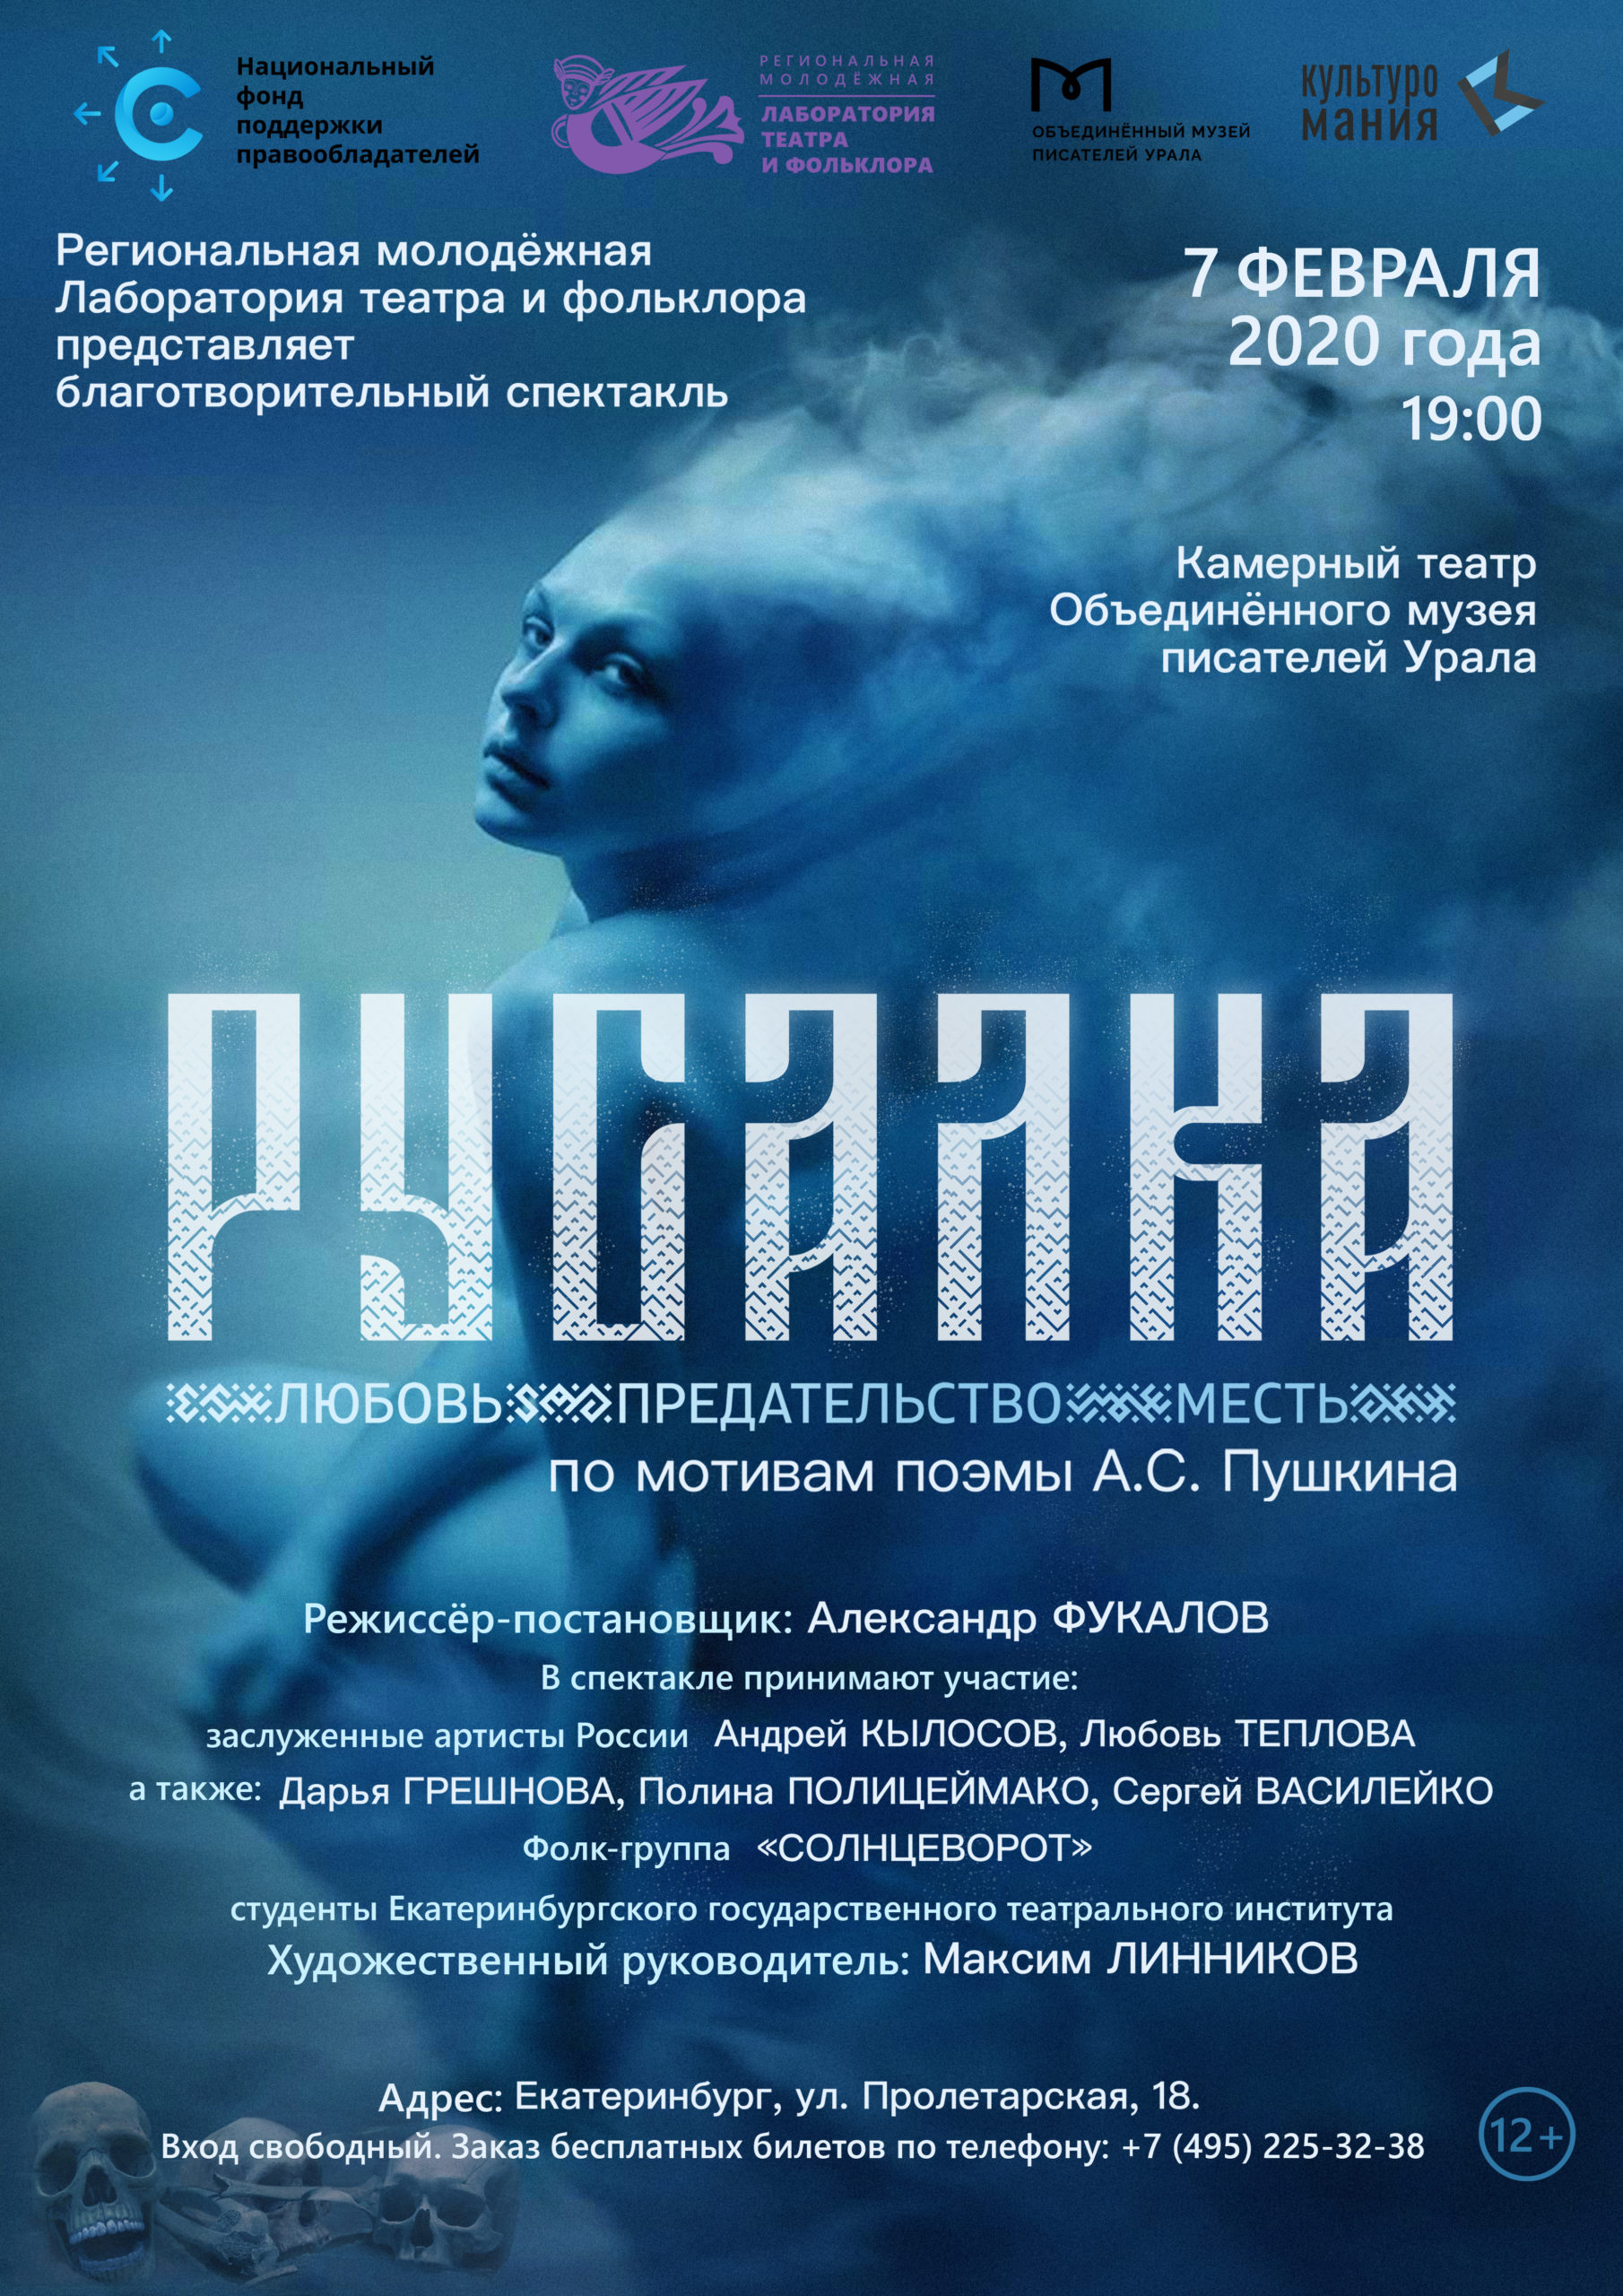 НФПП представит в Екатеринбурге премьеру спектакля “Русалка” Лаборатории театра и фольклора